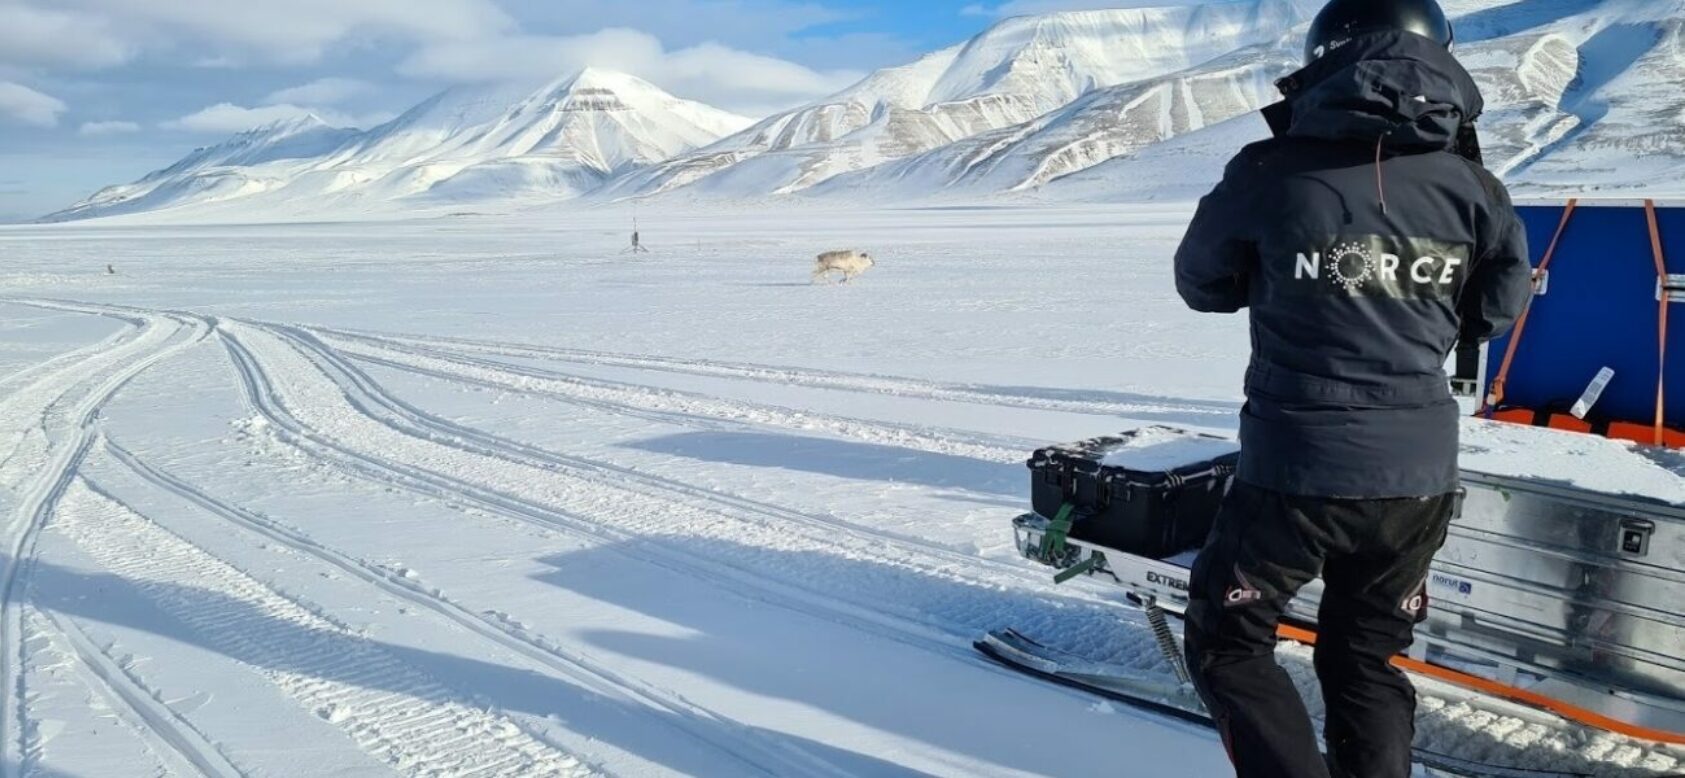 Eirik Malnes, From Svalbard, Snow pilot 20210416 090109, <p>Eirik Malnes</p>, Vinterlandskap på Svalbard med reinsdyr og scooterkjører